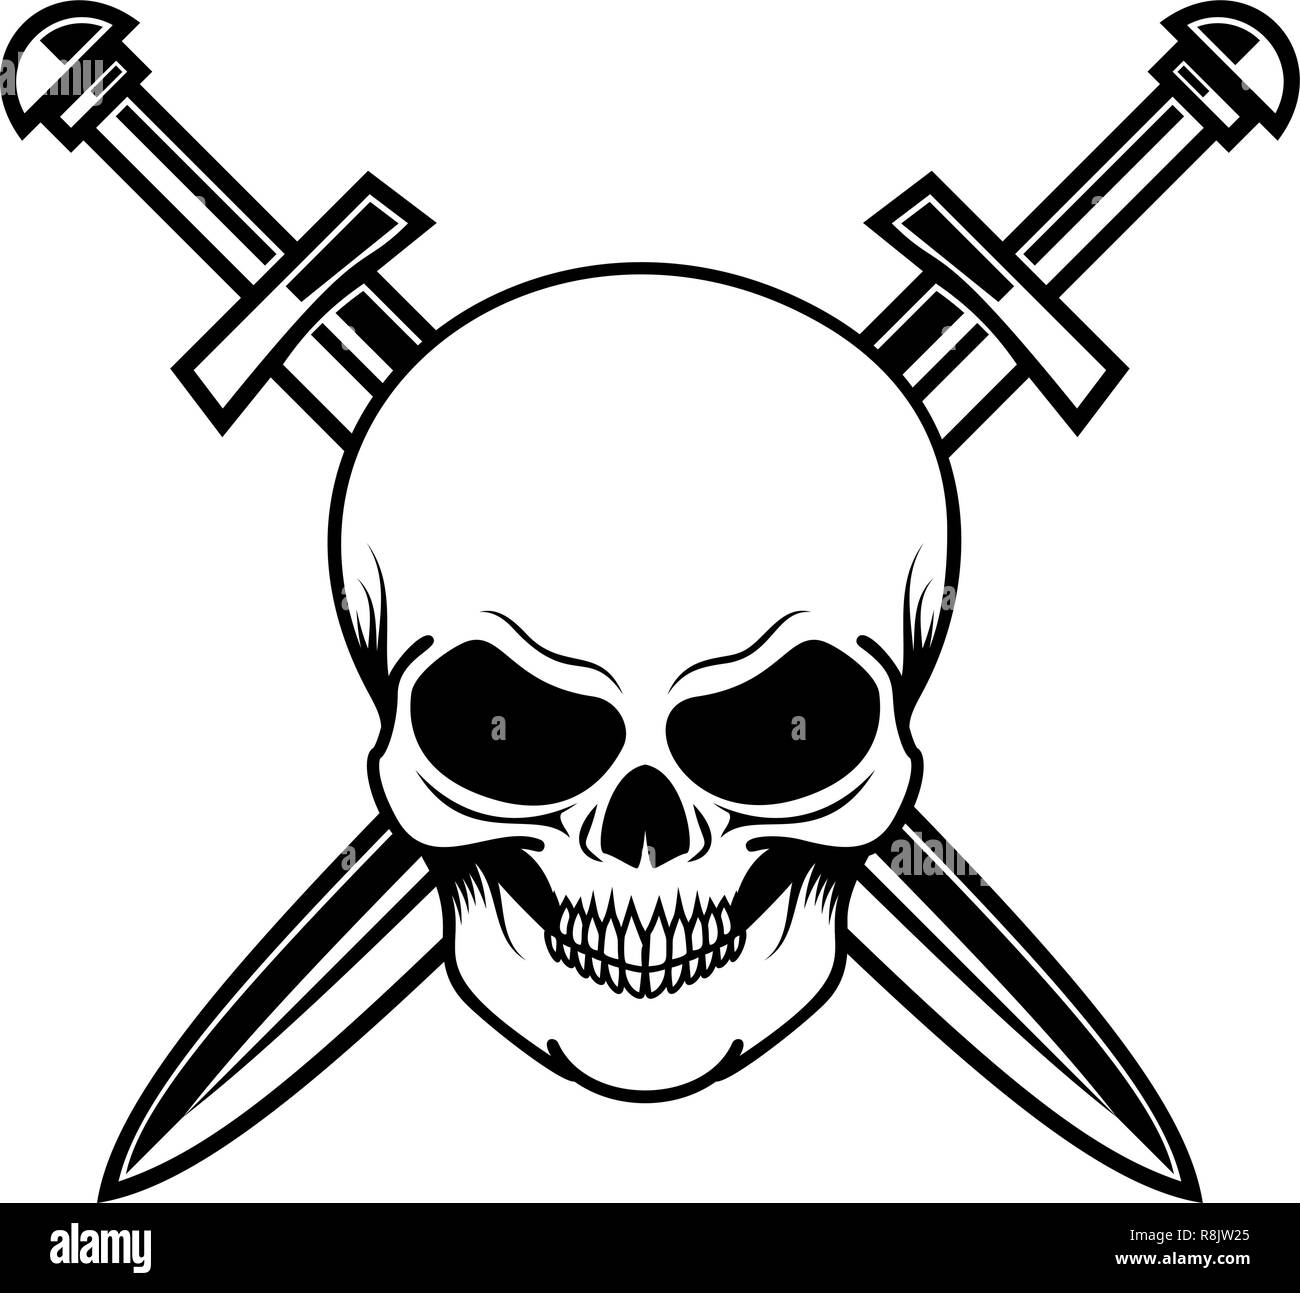 Totenkopf mit gekreuzten Schwertern. Design Element für Logo, Etiketten,  Zeichen, Poster, T-Shirt. Vector Illustration Stock-Vektorgrafik - Alamy